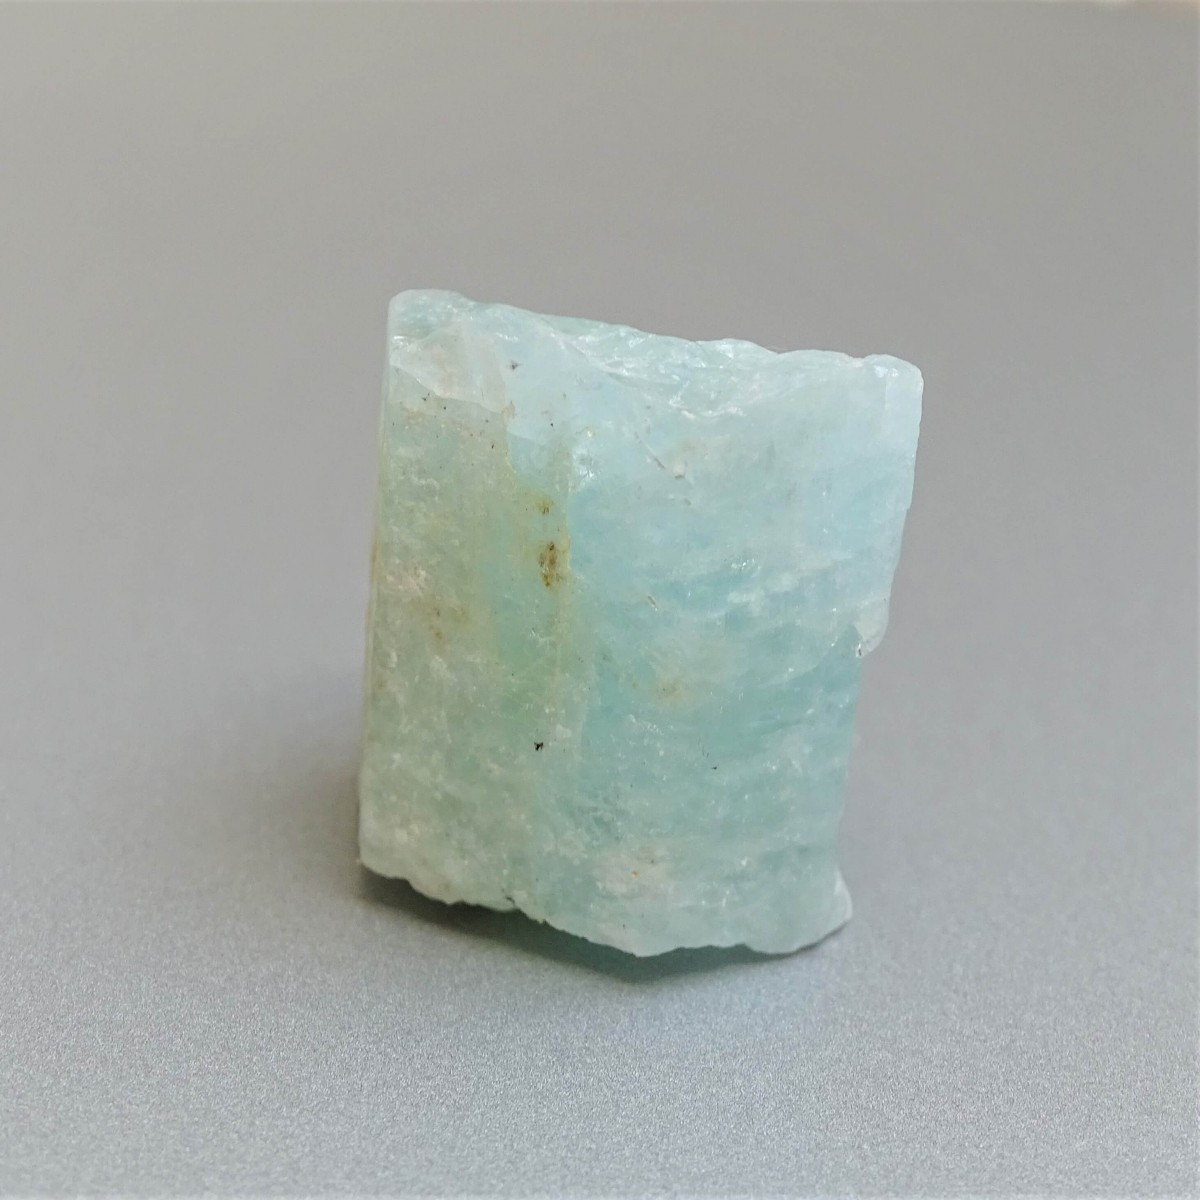 Aquamarin natürliches Mineral 18,9g, Pakistan